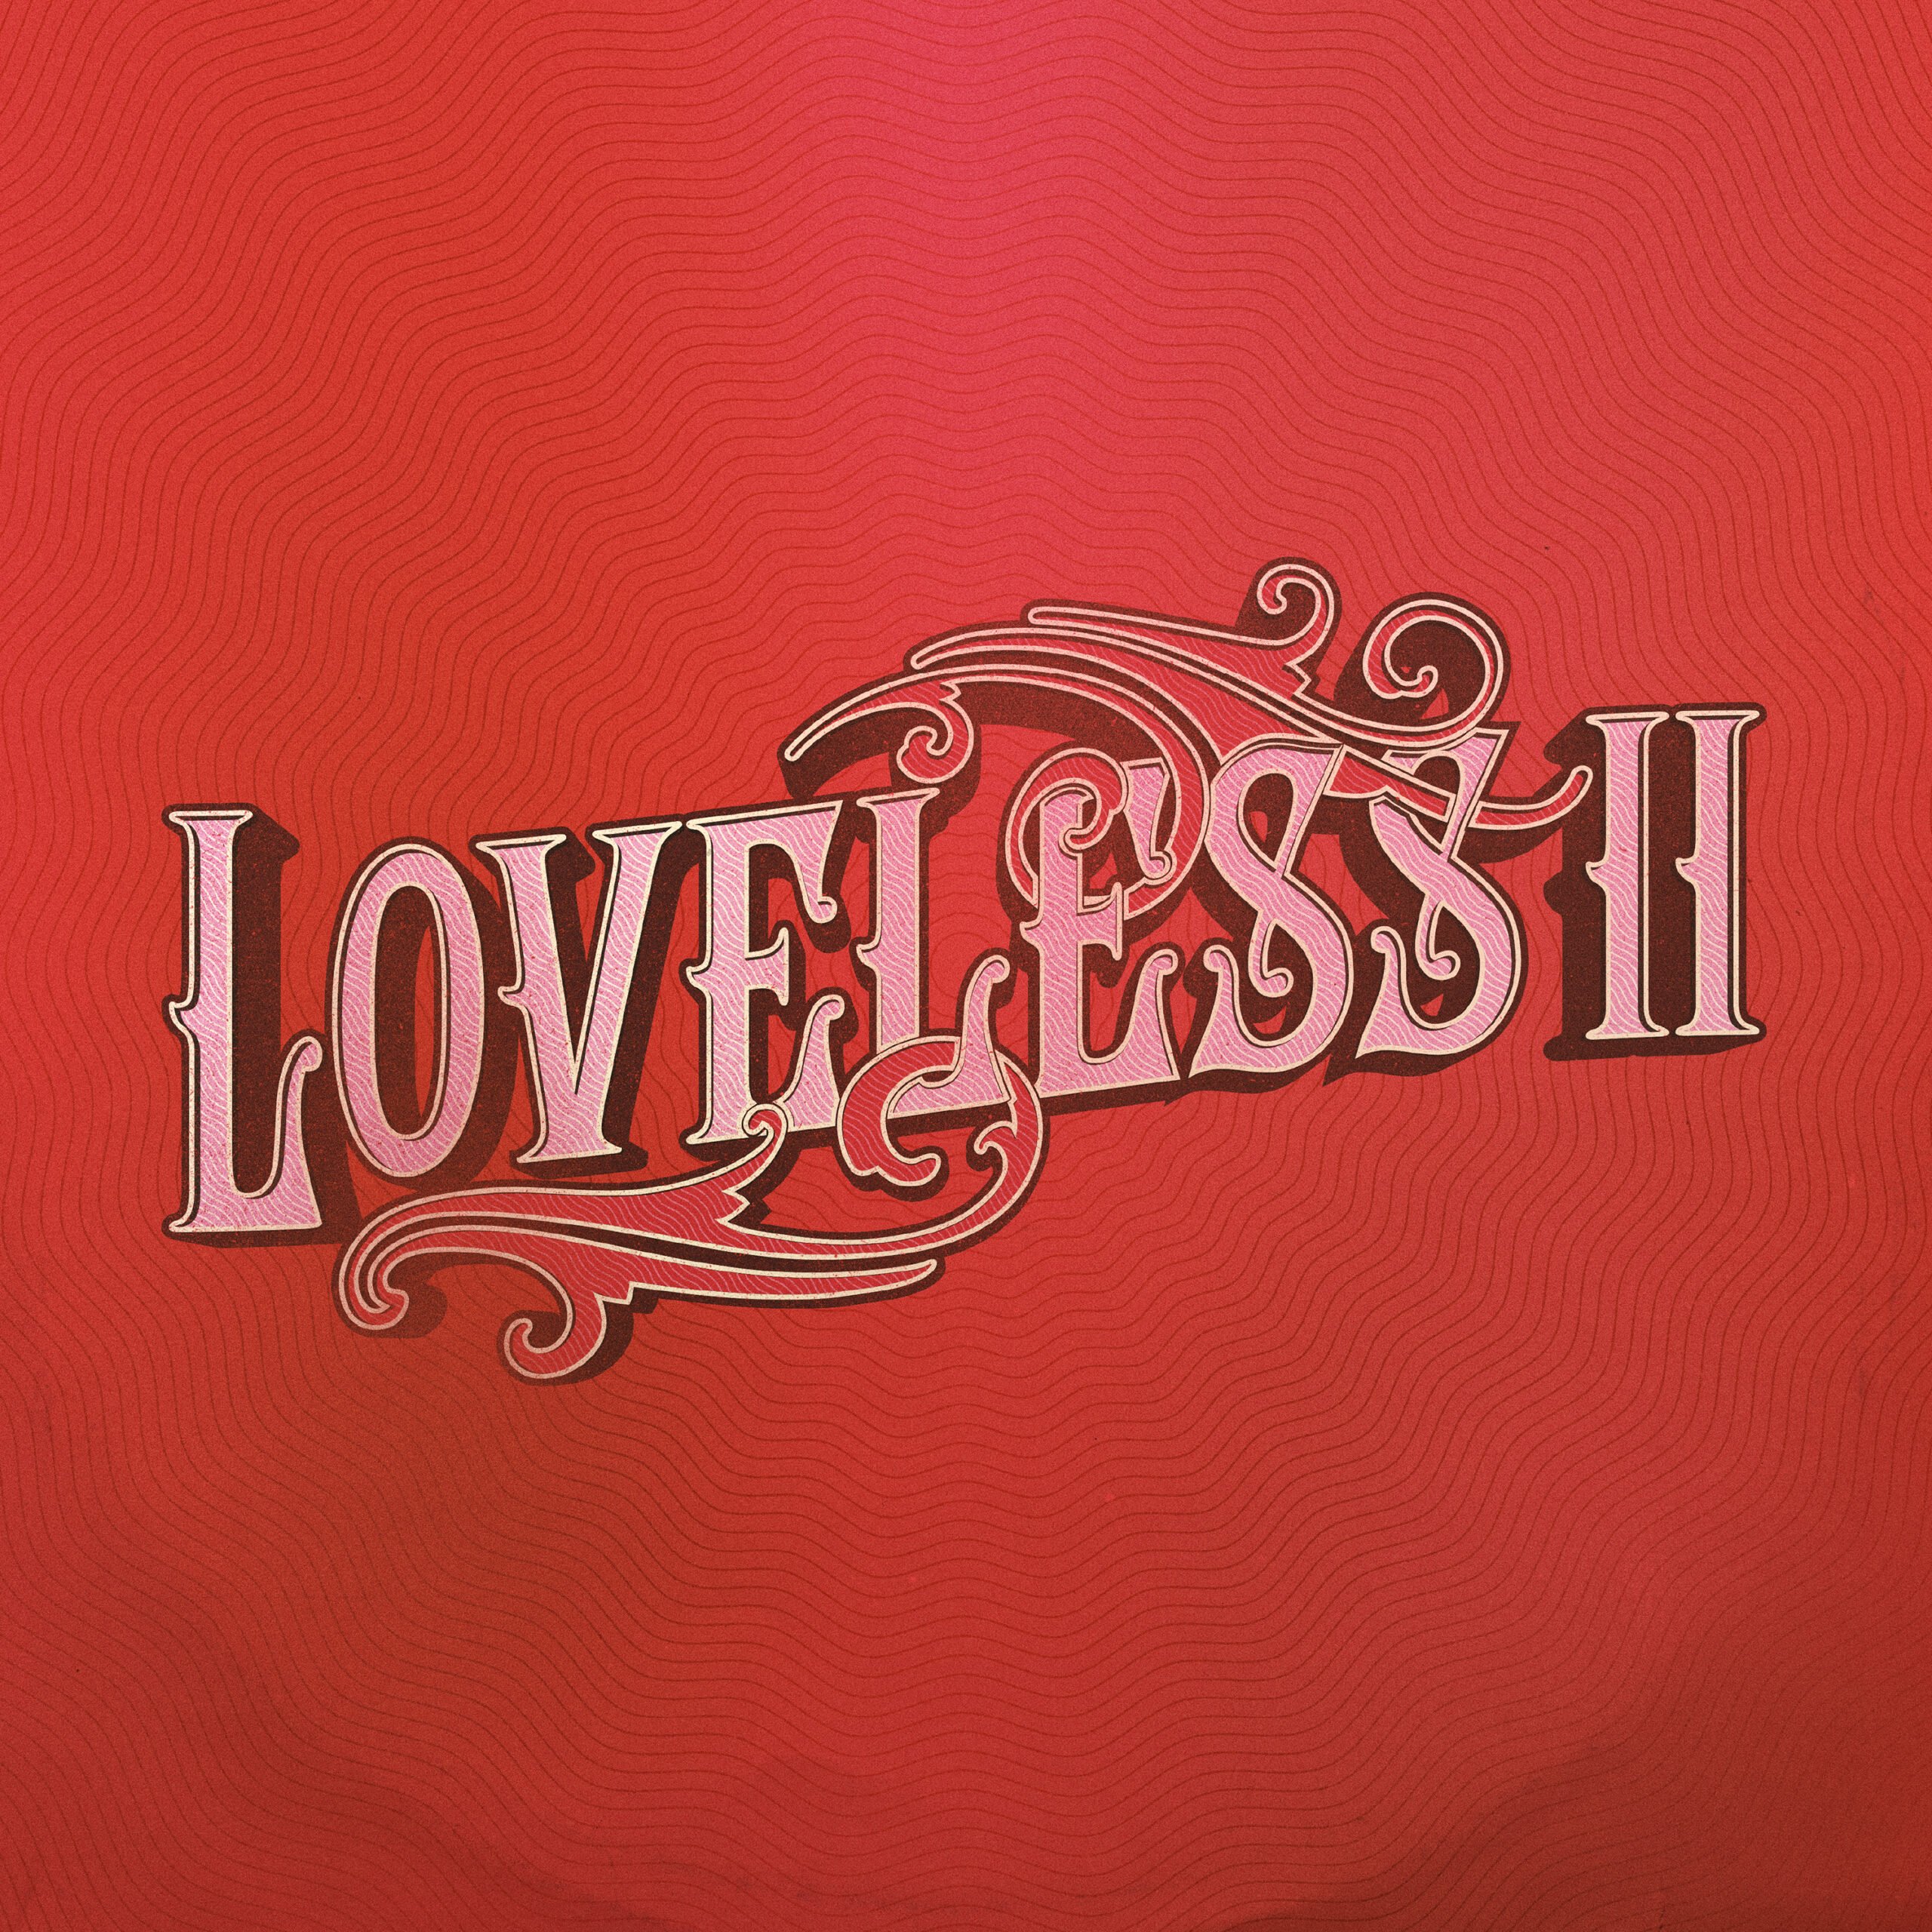 Loveless II album artwork